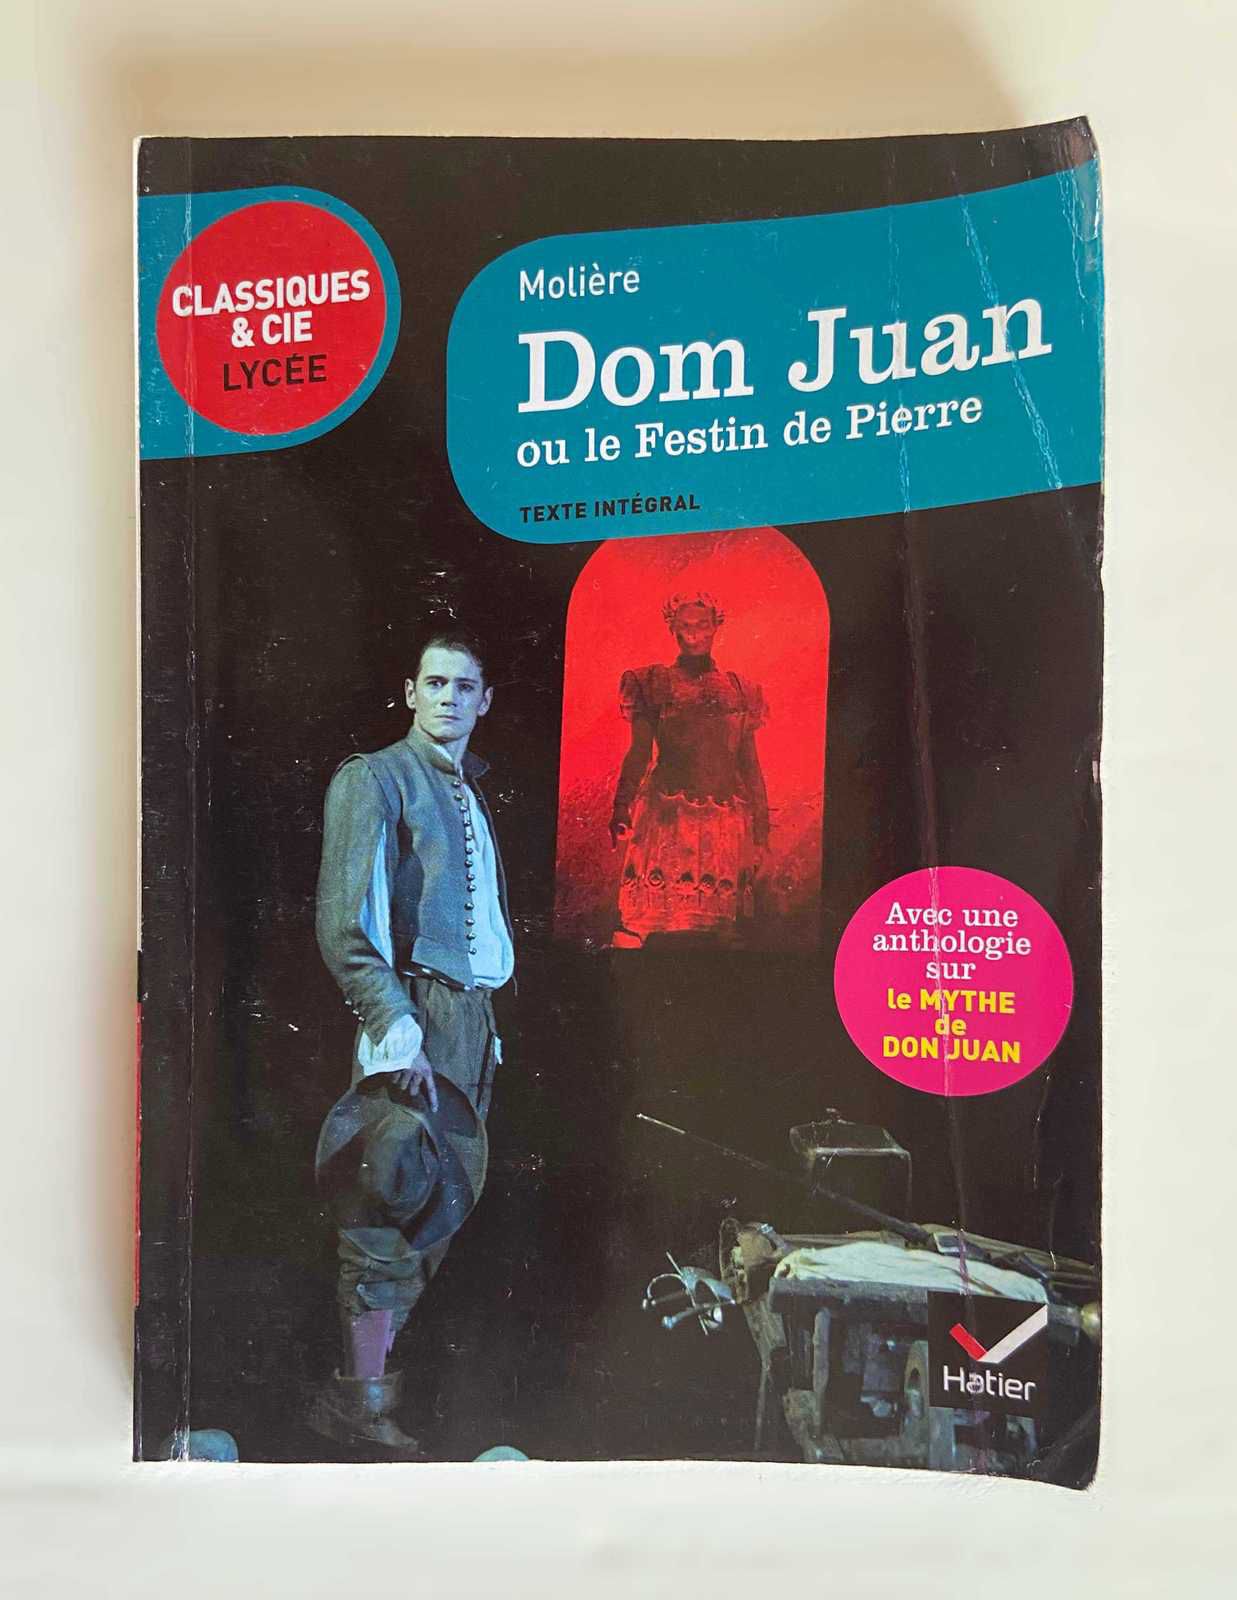 Livre « Don Juan ou le festin de Pierre» de Molière, ed. Hatier 2015